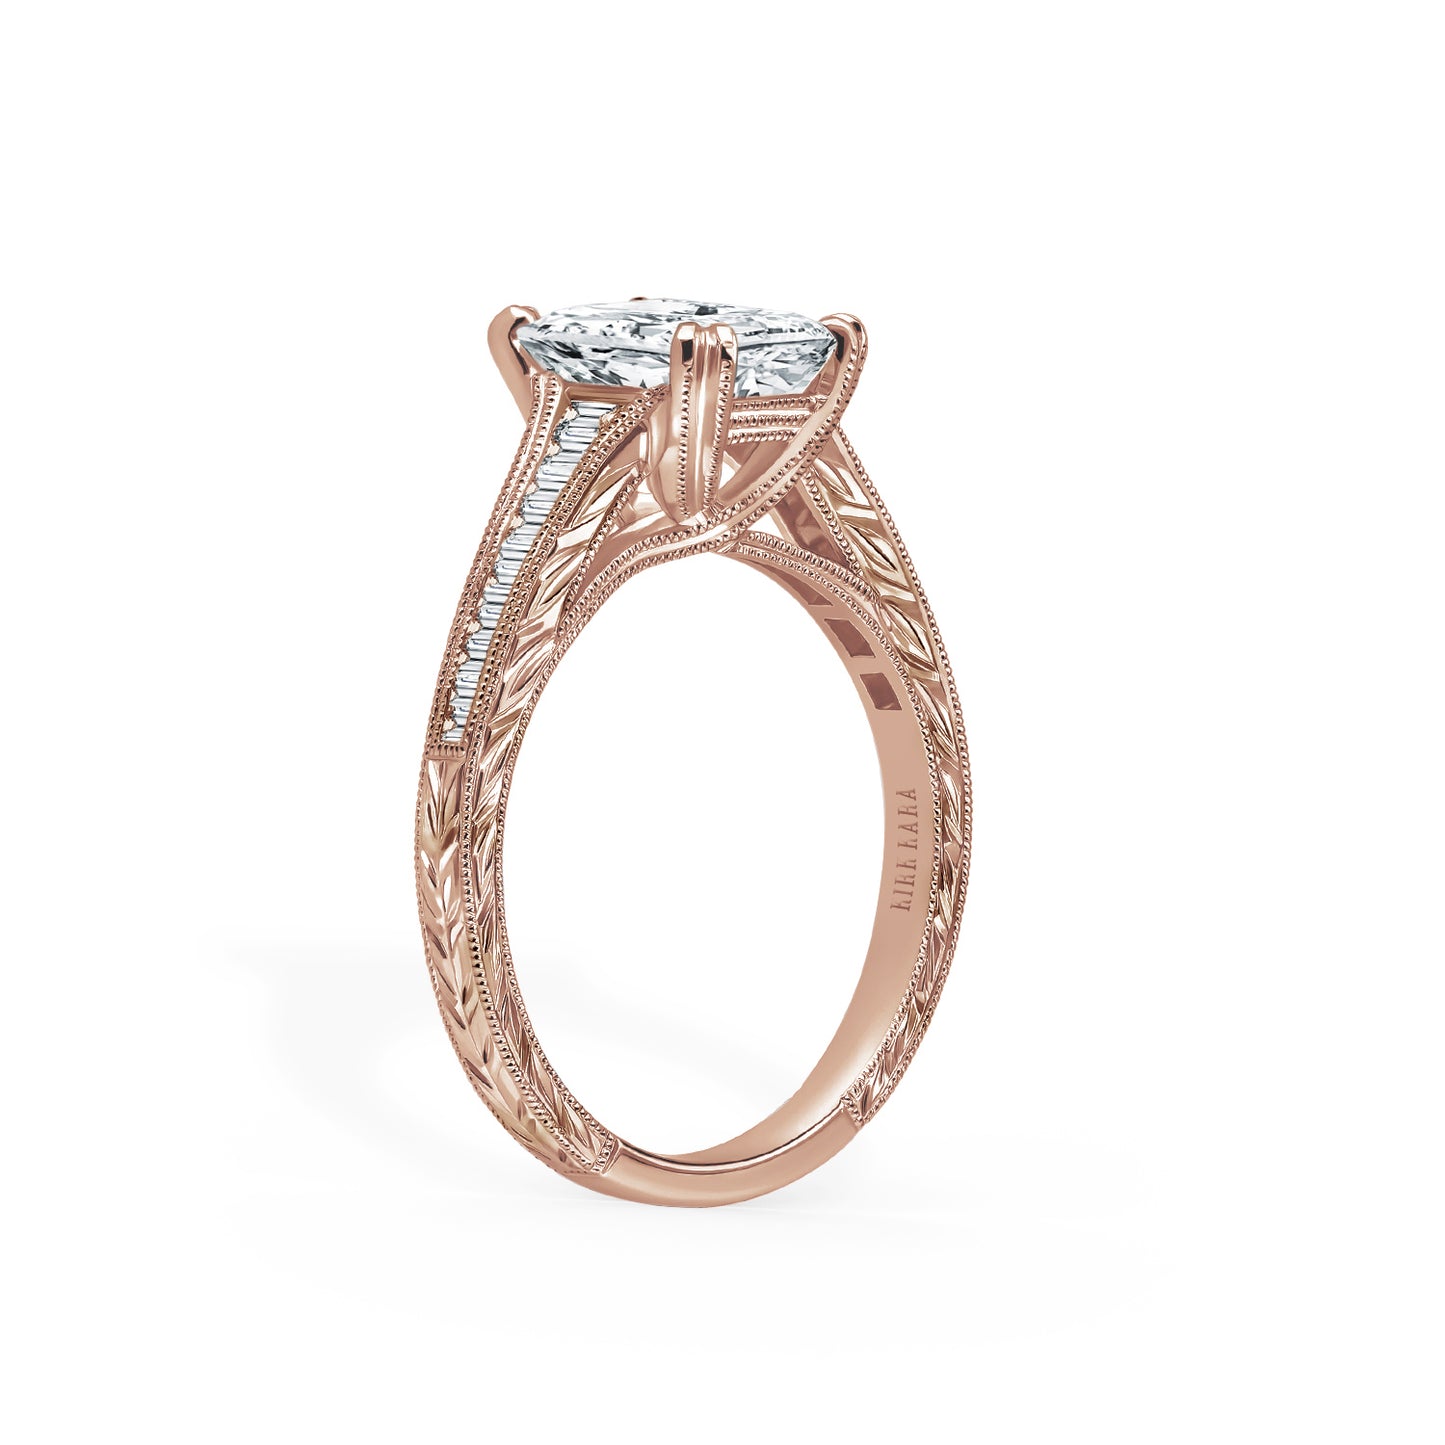 Channel Set Graduated Baguette Diamond Engagement Ring